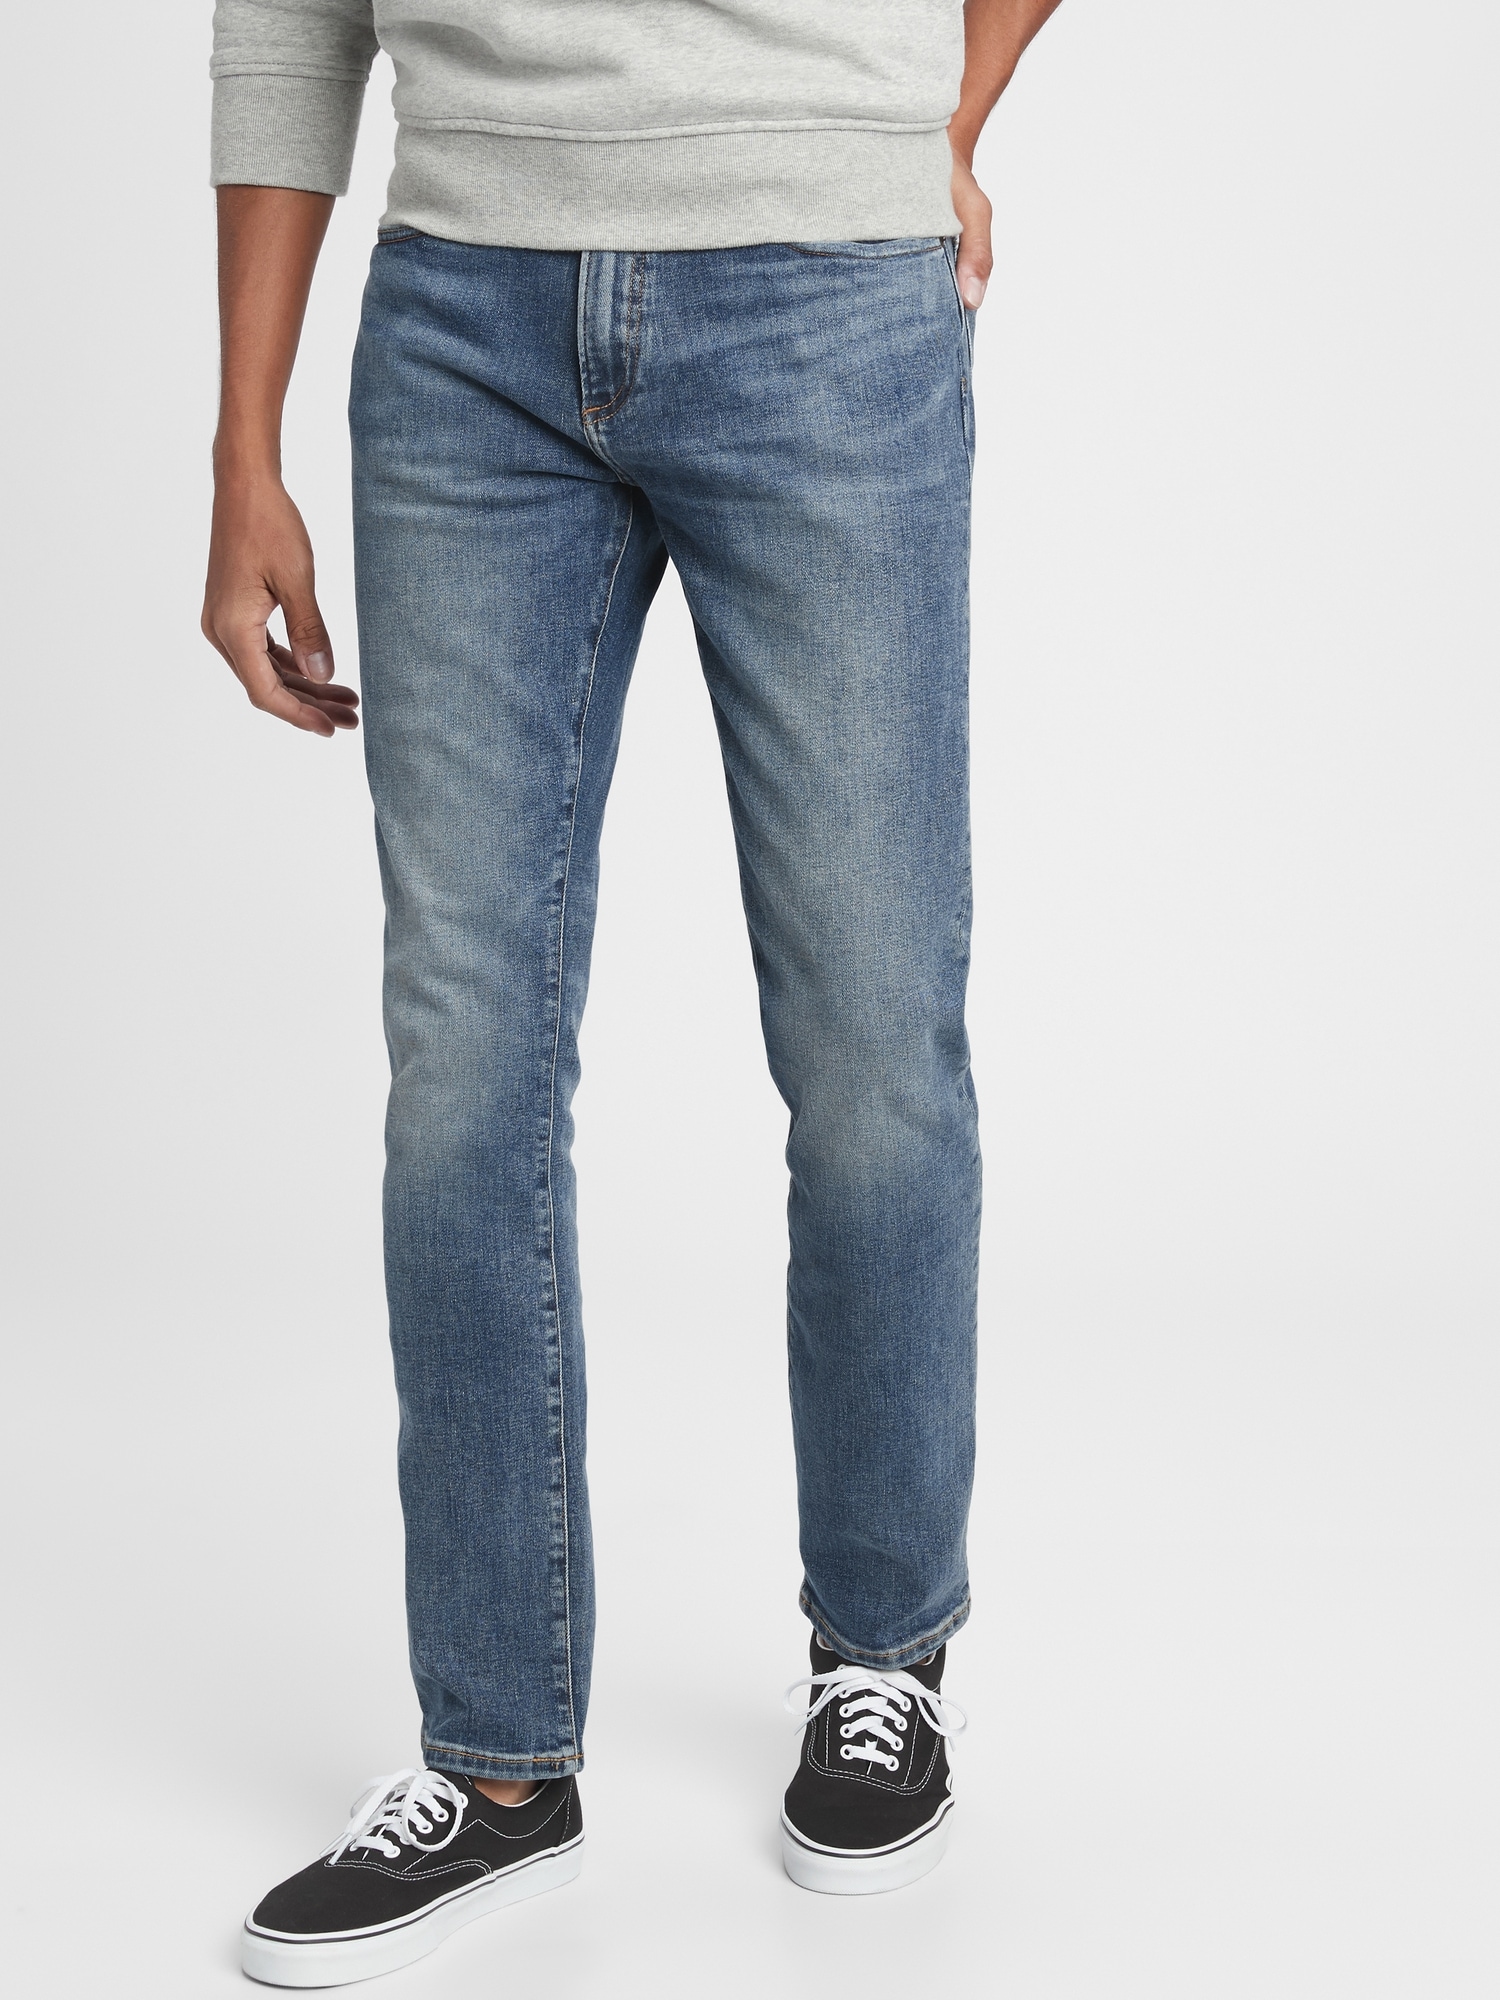 gap men's skinny jeans